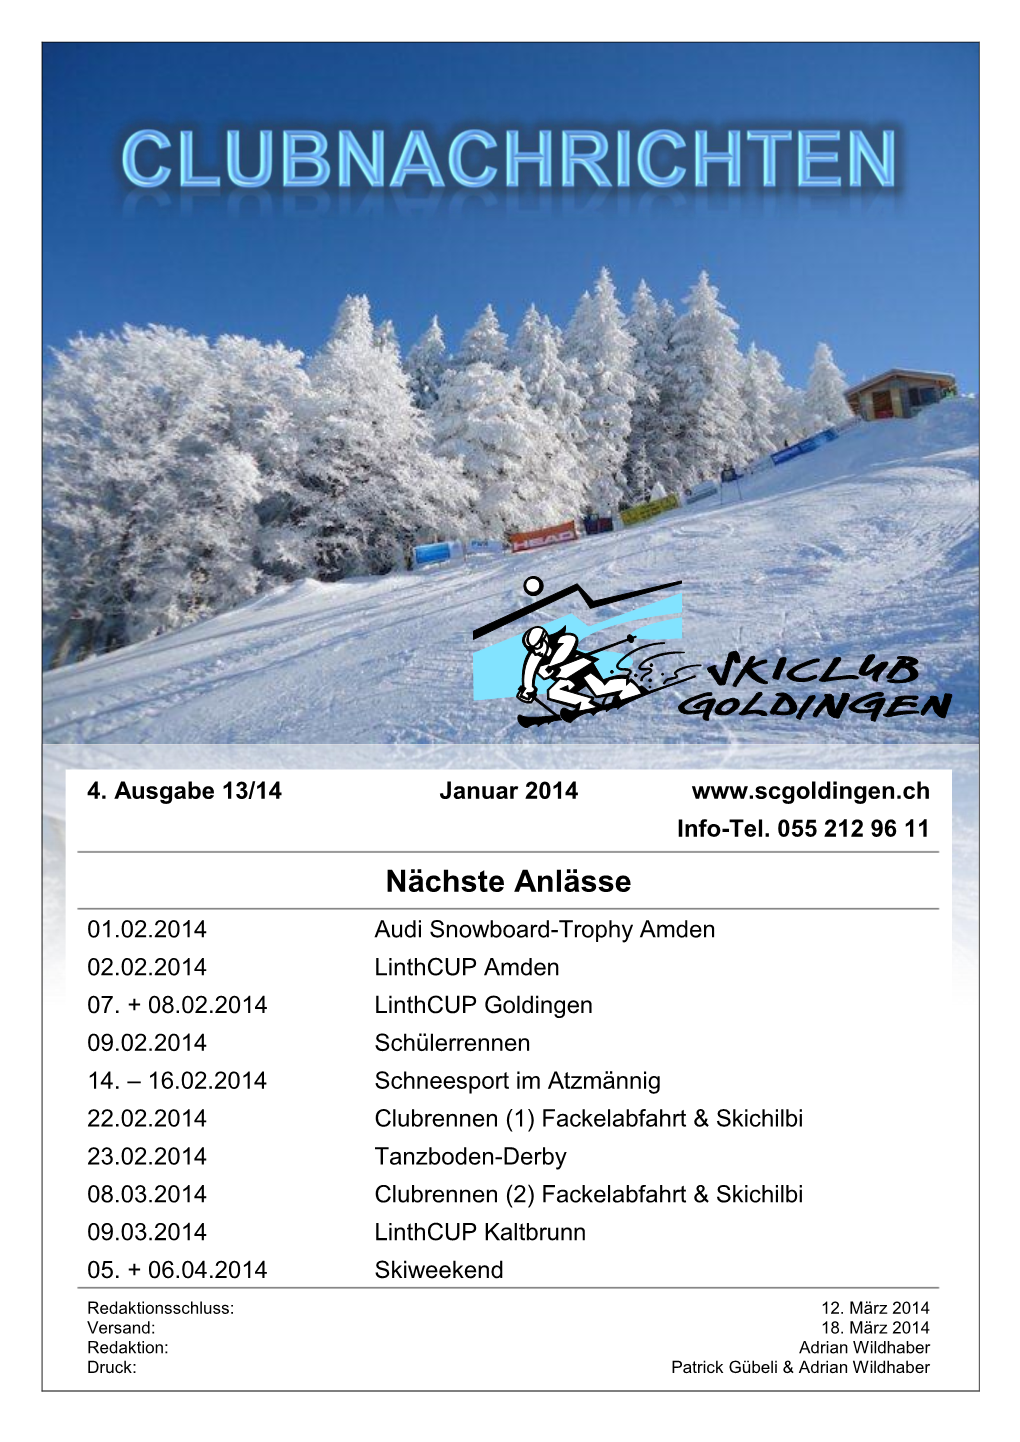 Nächste Anlässe 01.02.2014 Audi Snowboard-Trophy Amden 02.02.2014 Linthcup Amden 07